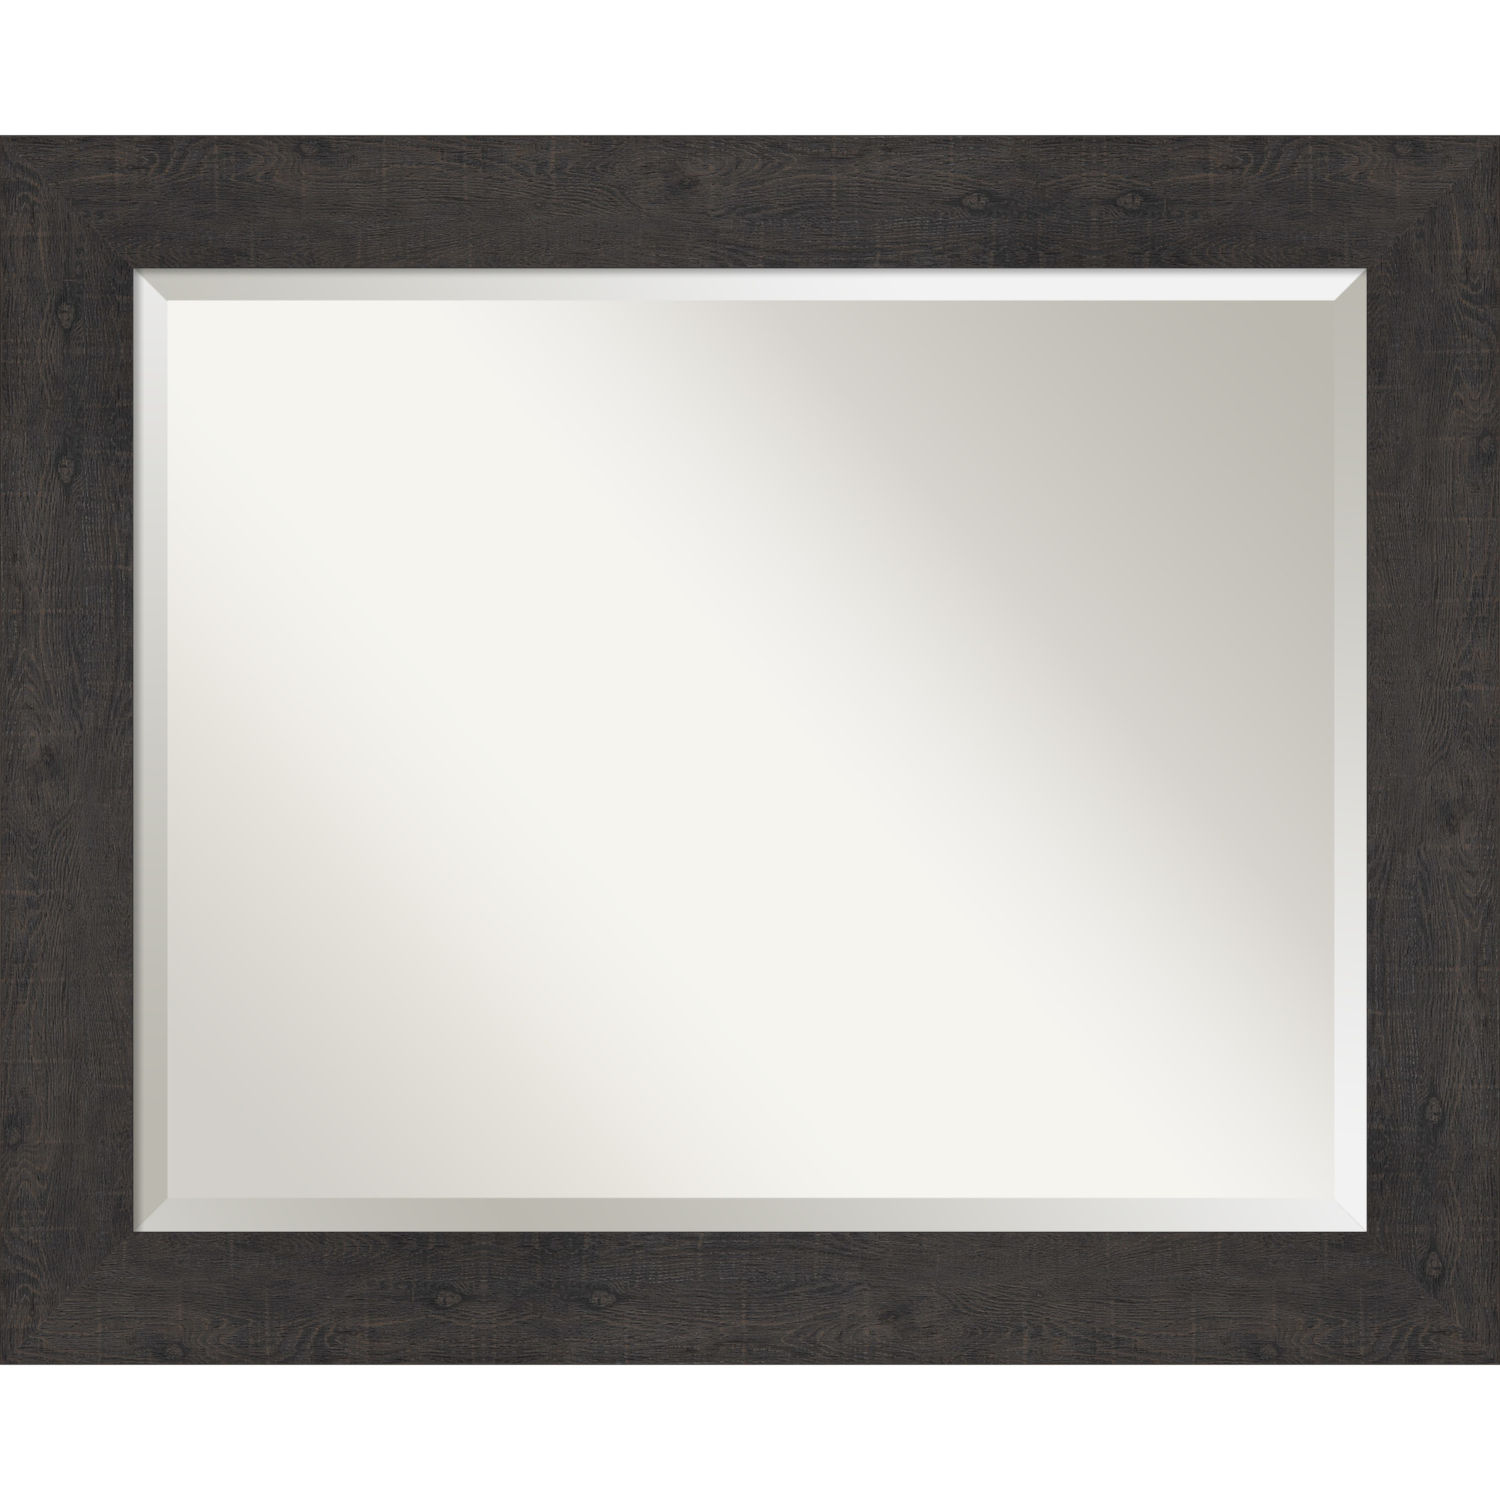 Espresso Frame 33W X 27H-Inch Bathroom Vanity Wall Mirror